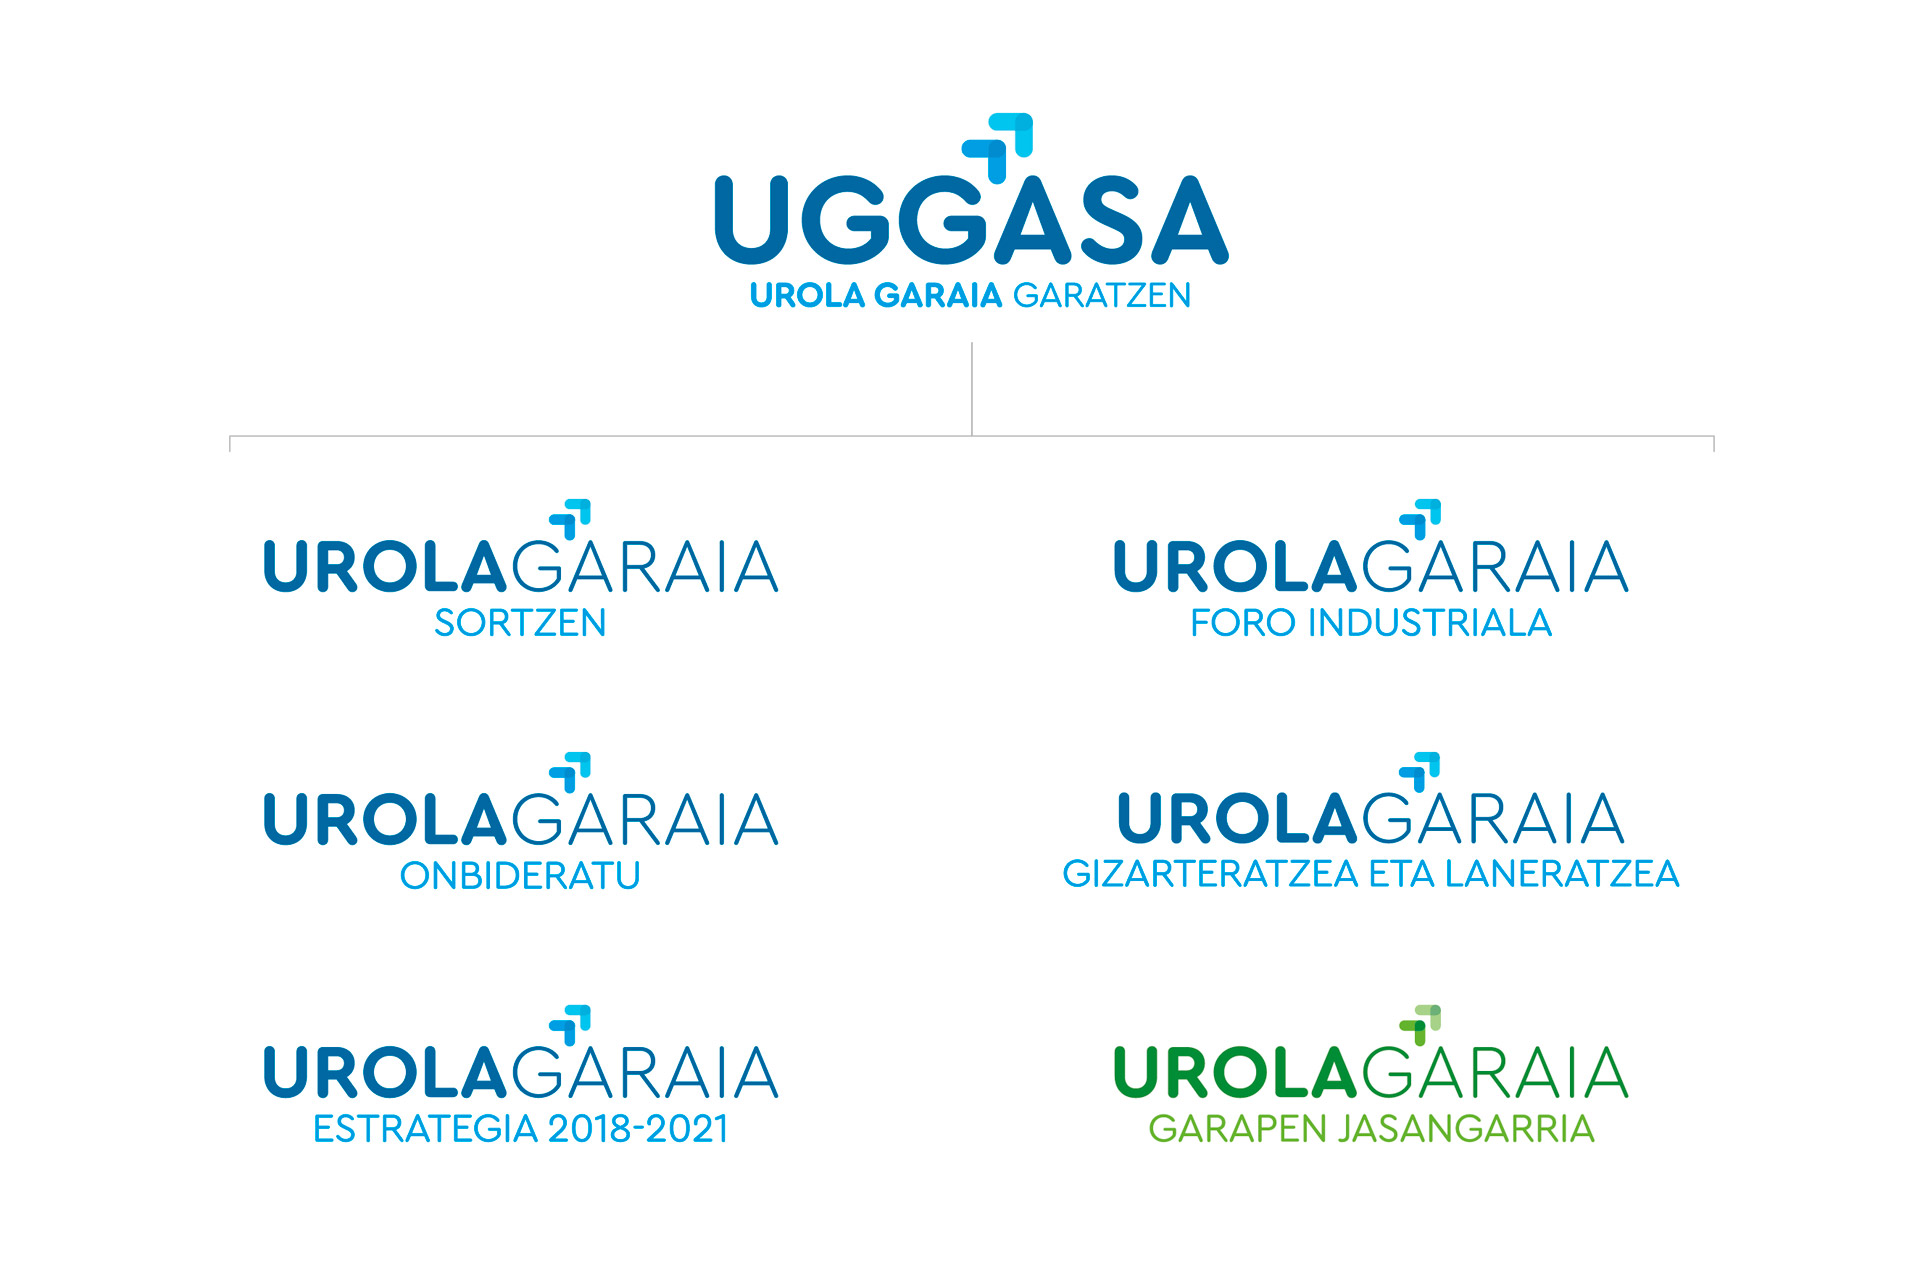 Jerarquía de marca Uggasa